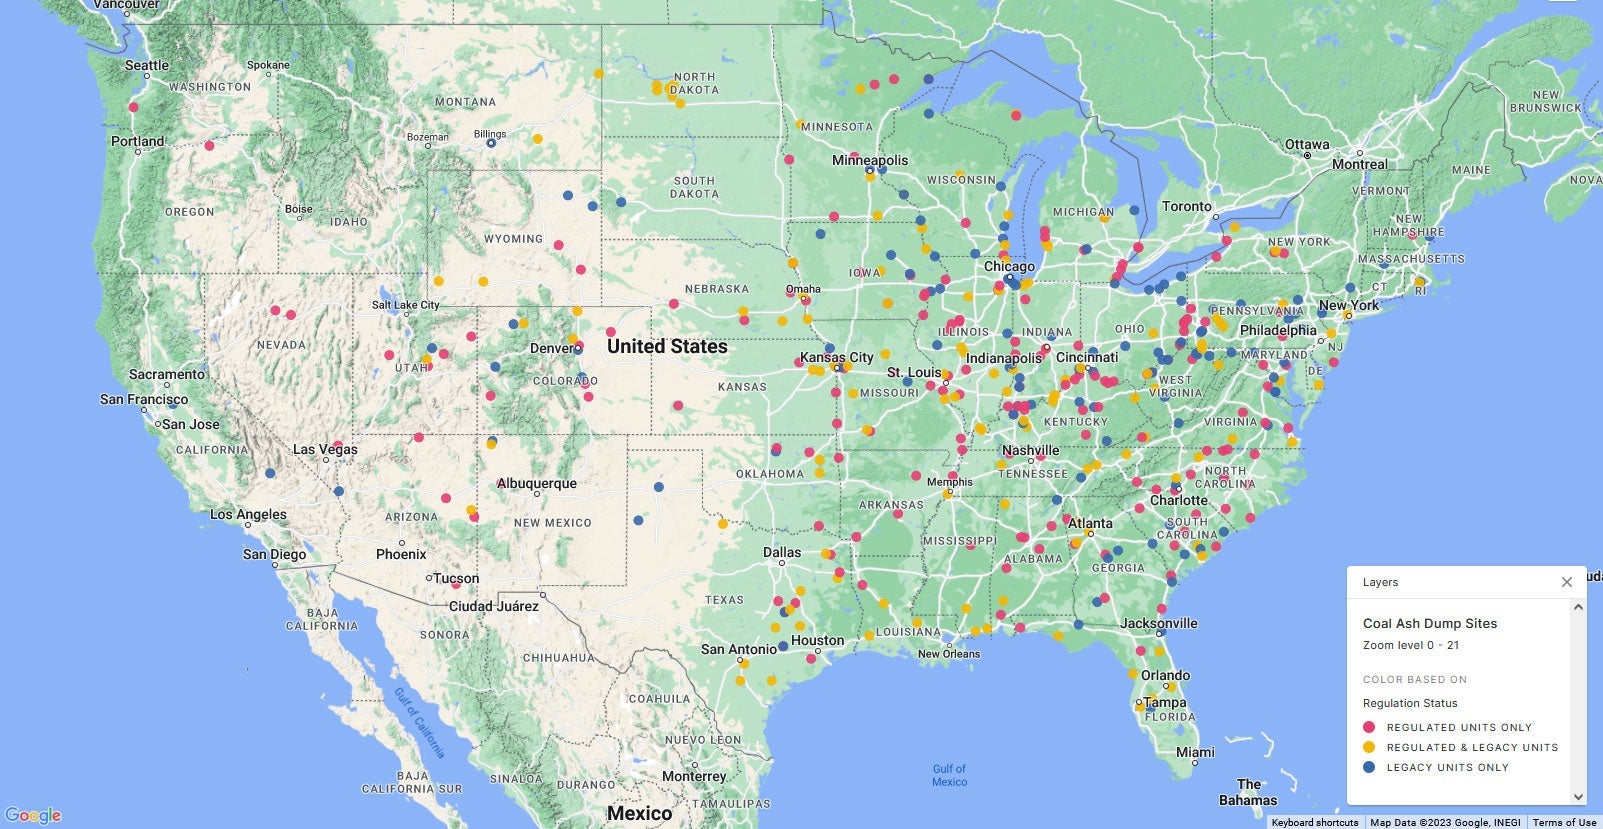 Ubicación de vertederos de cenizas de carbón a través de los Estados Unidos. Usa este mapa (en inglés) para saber si los lugares en donde las cenizas de carbón están cerca de tu lugar de residencia y si dicho sitio puede ser impactado por la expansión de la Regla de Ceniza de Carbón federal.